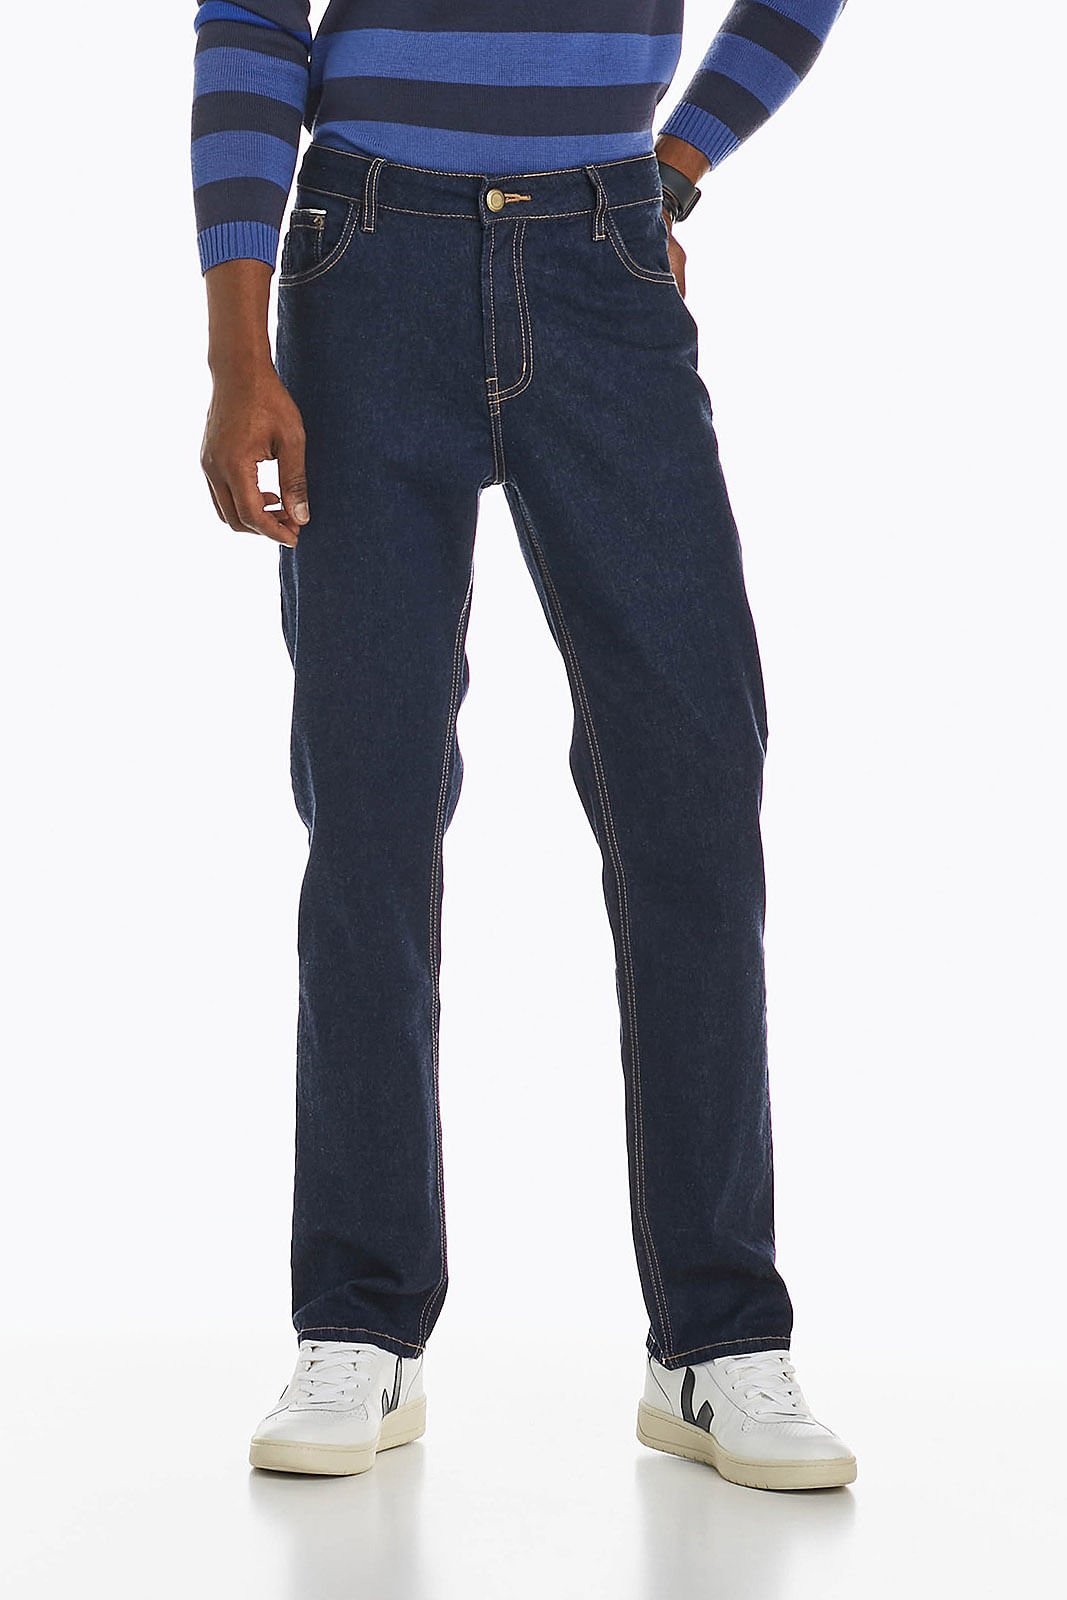 Calça Jeans Masculina Slim Fit Denuncia 101324332 Azul